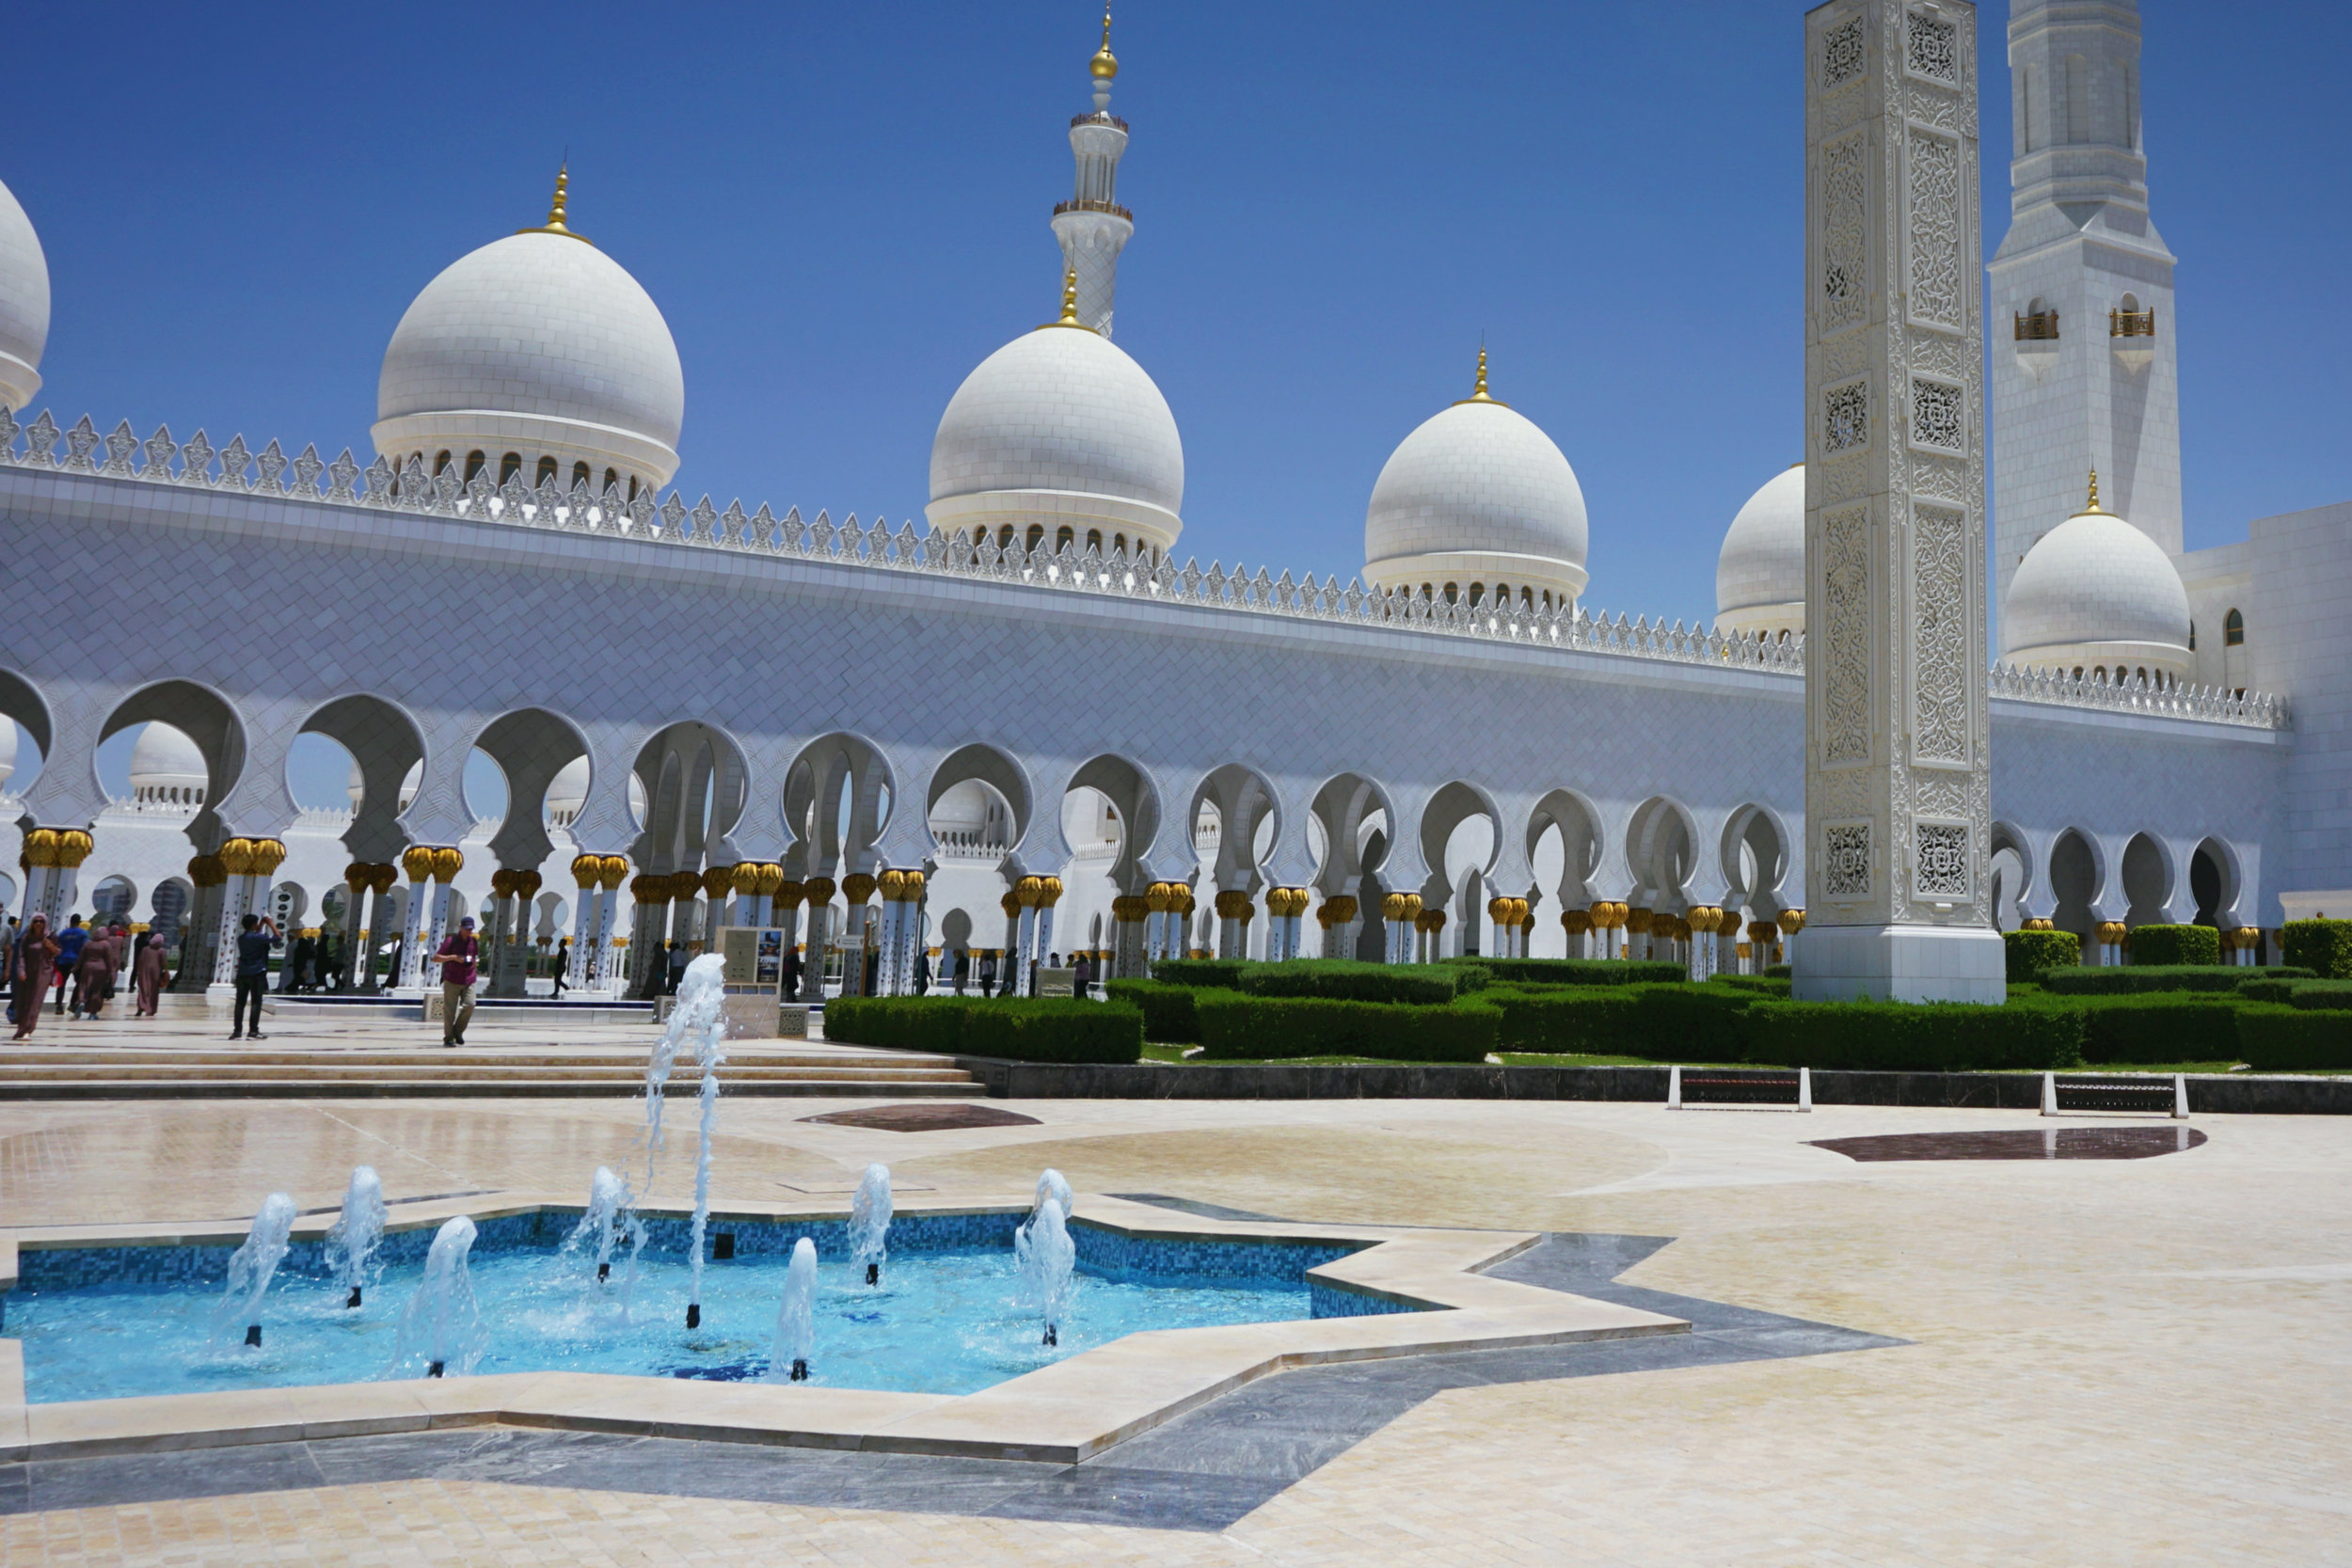 UAE_Abu Dhabi_Sheikh Zayed Mosque from side entrance.jpg